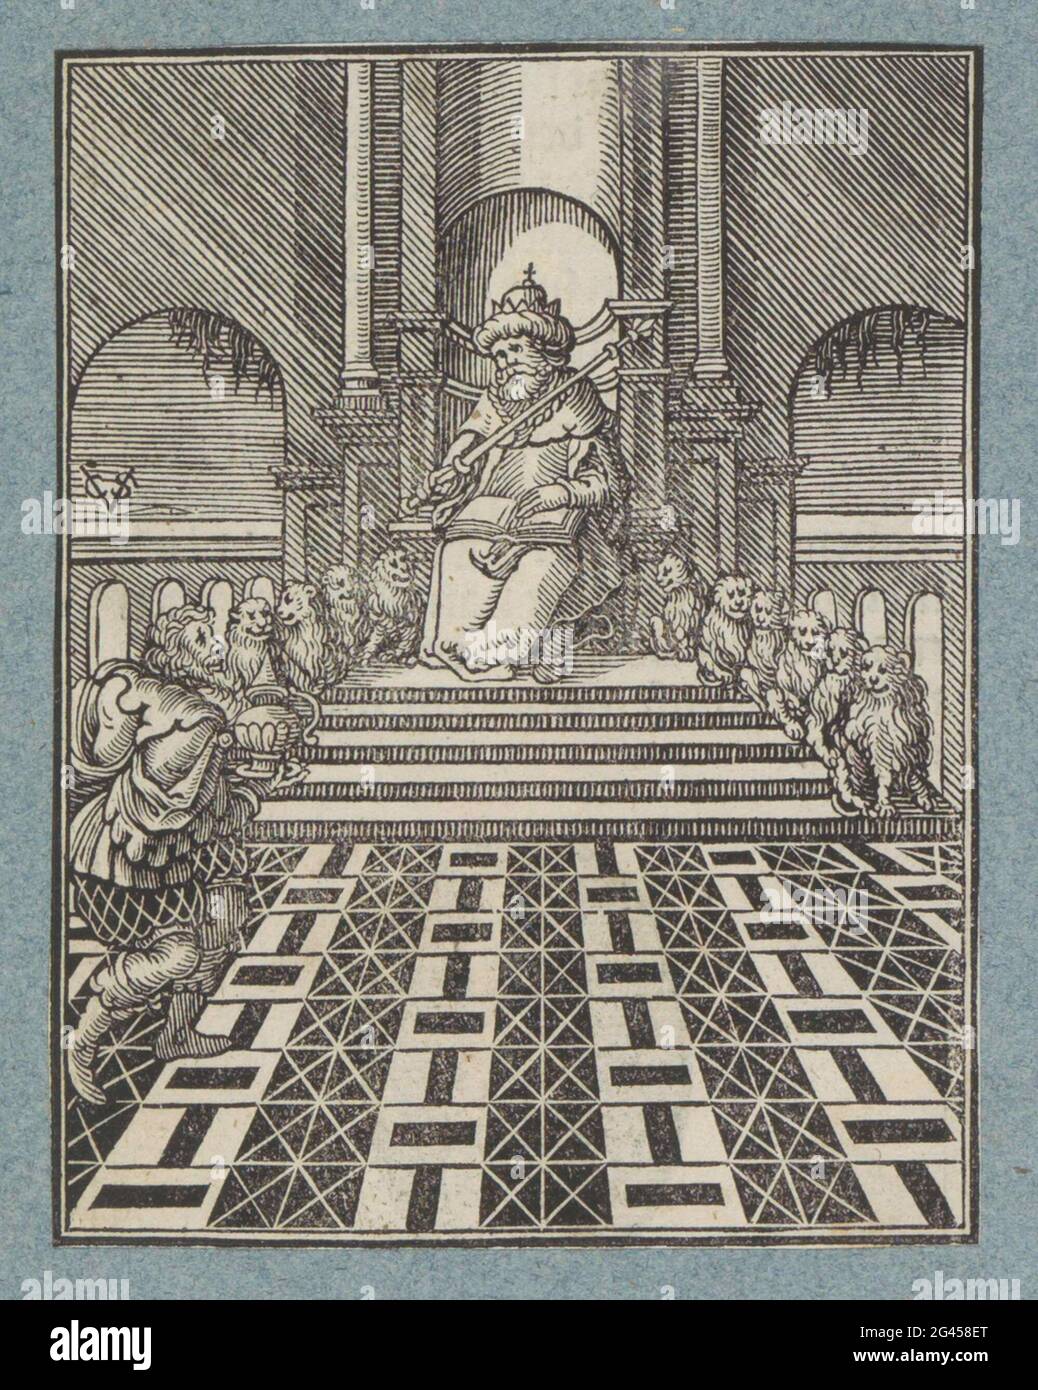 Trône de Salomon. Le roi Salomon est assis sur son trône. Il a un sceptre  dans sa main et sur sa photo est un livre. Selon 1 rois 10, le trône  d'ivoire